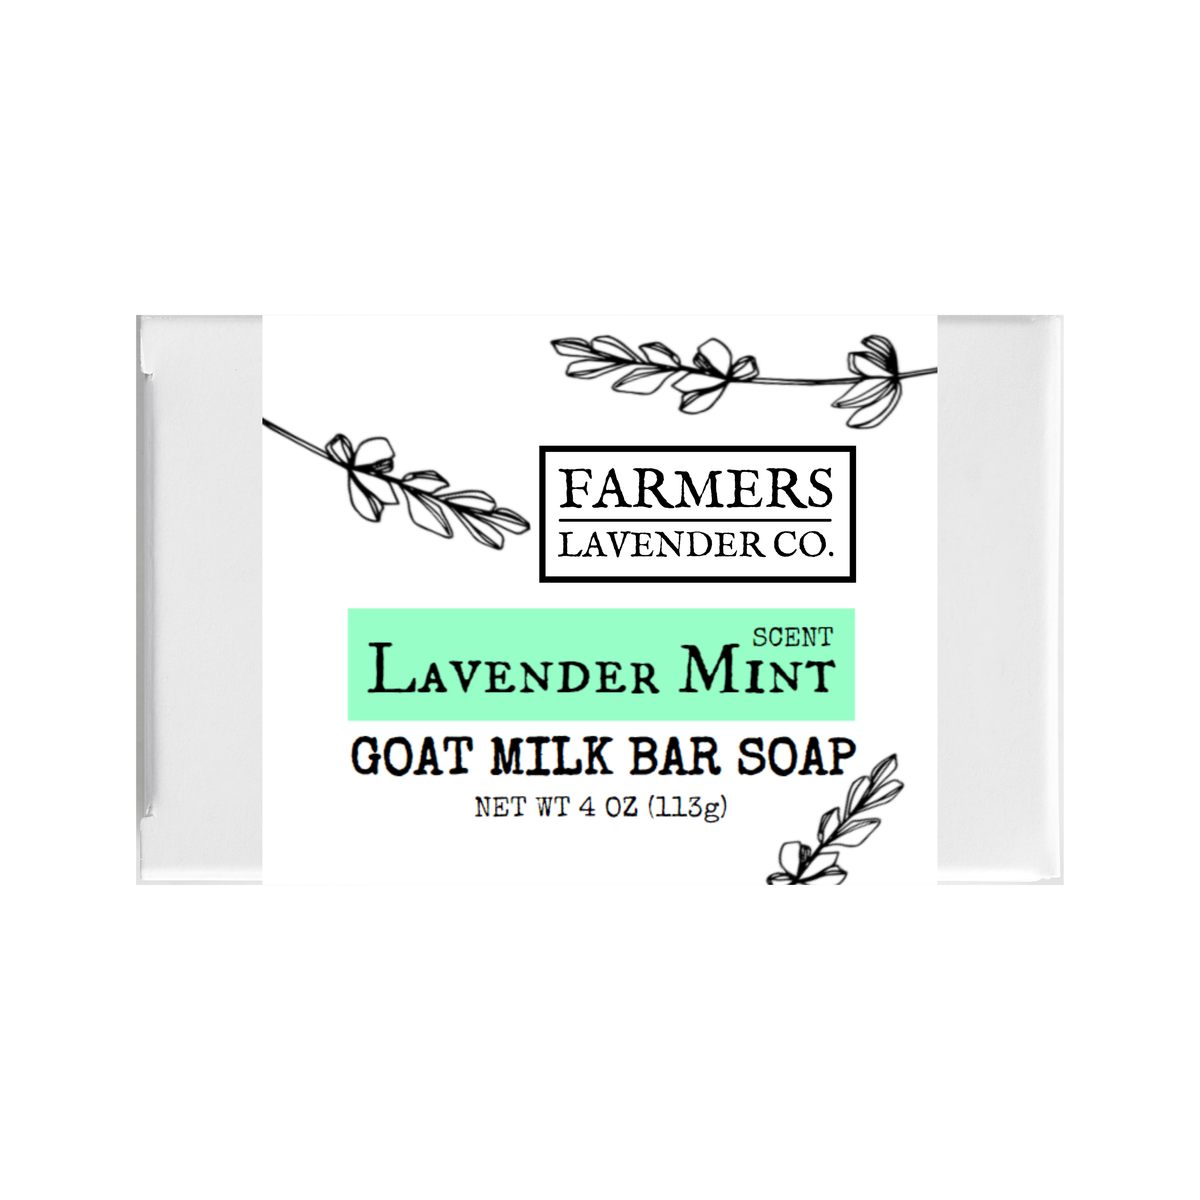 FARMERS Lavender Co. - Lavender Mint Goat Milk Bar Soap